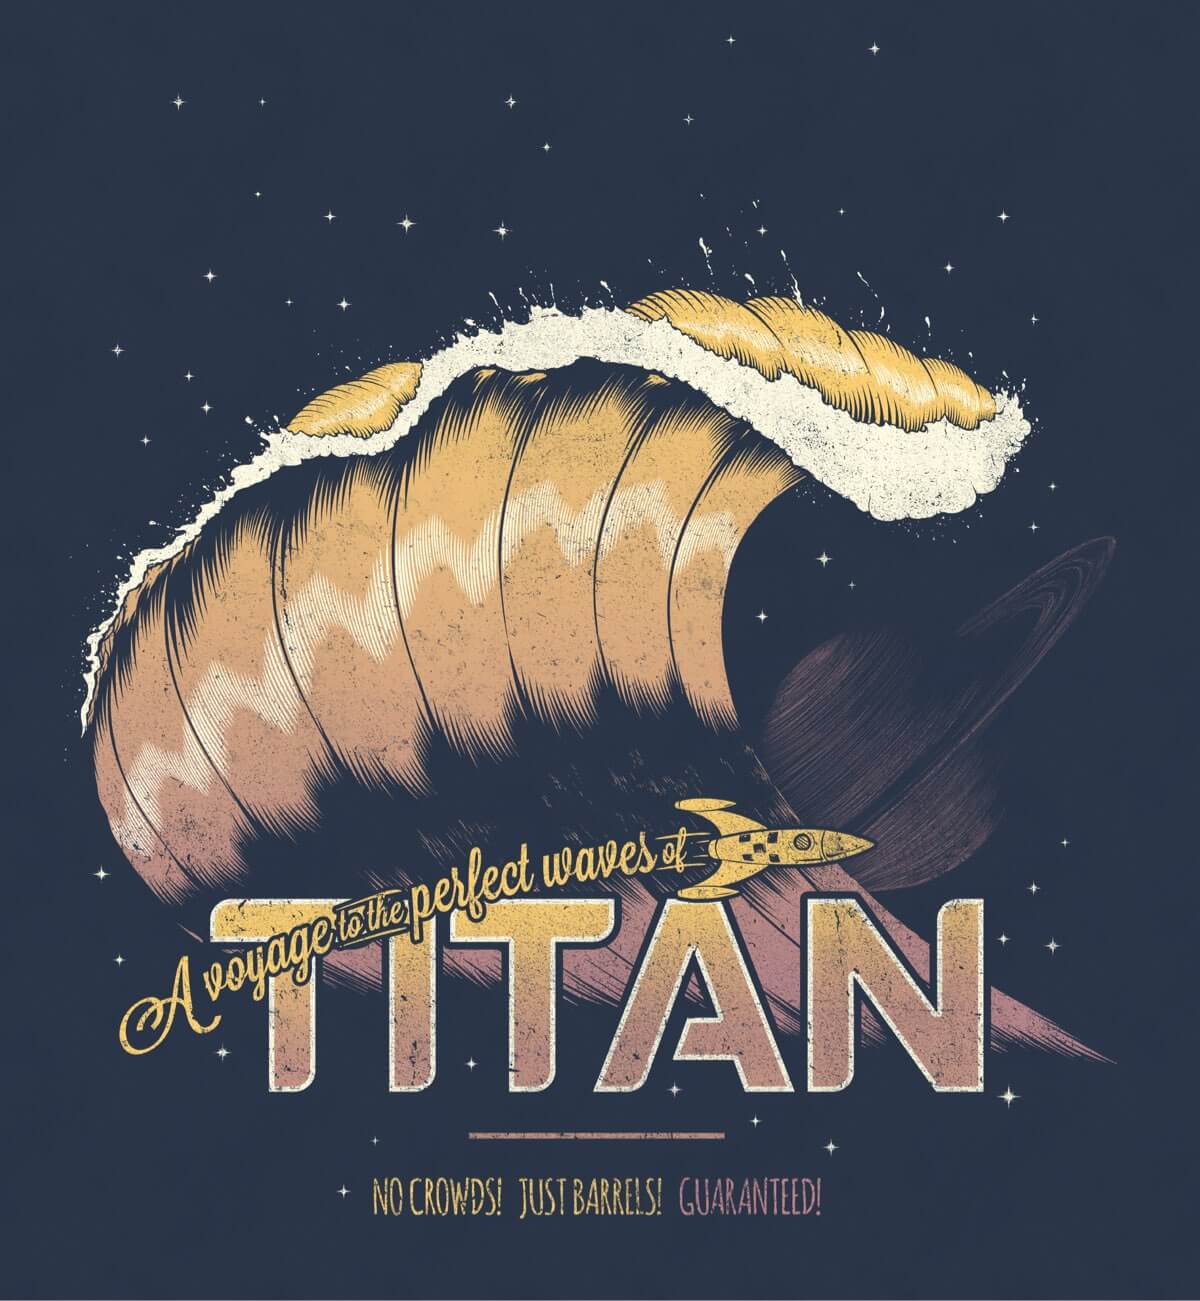 Surfing Titan illustration by Bálooie